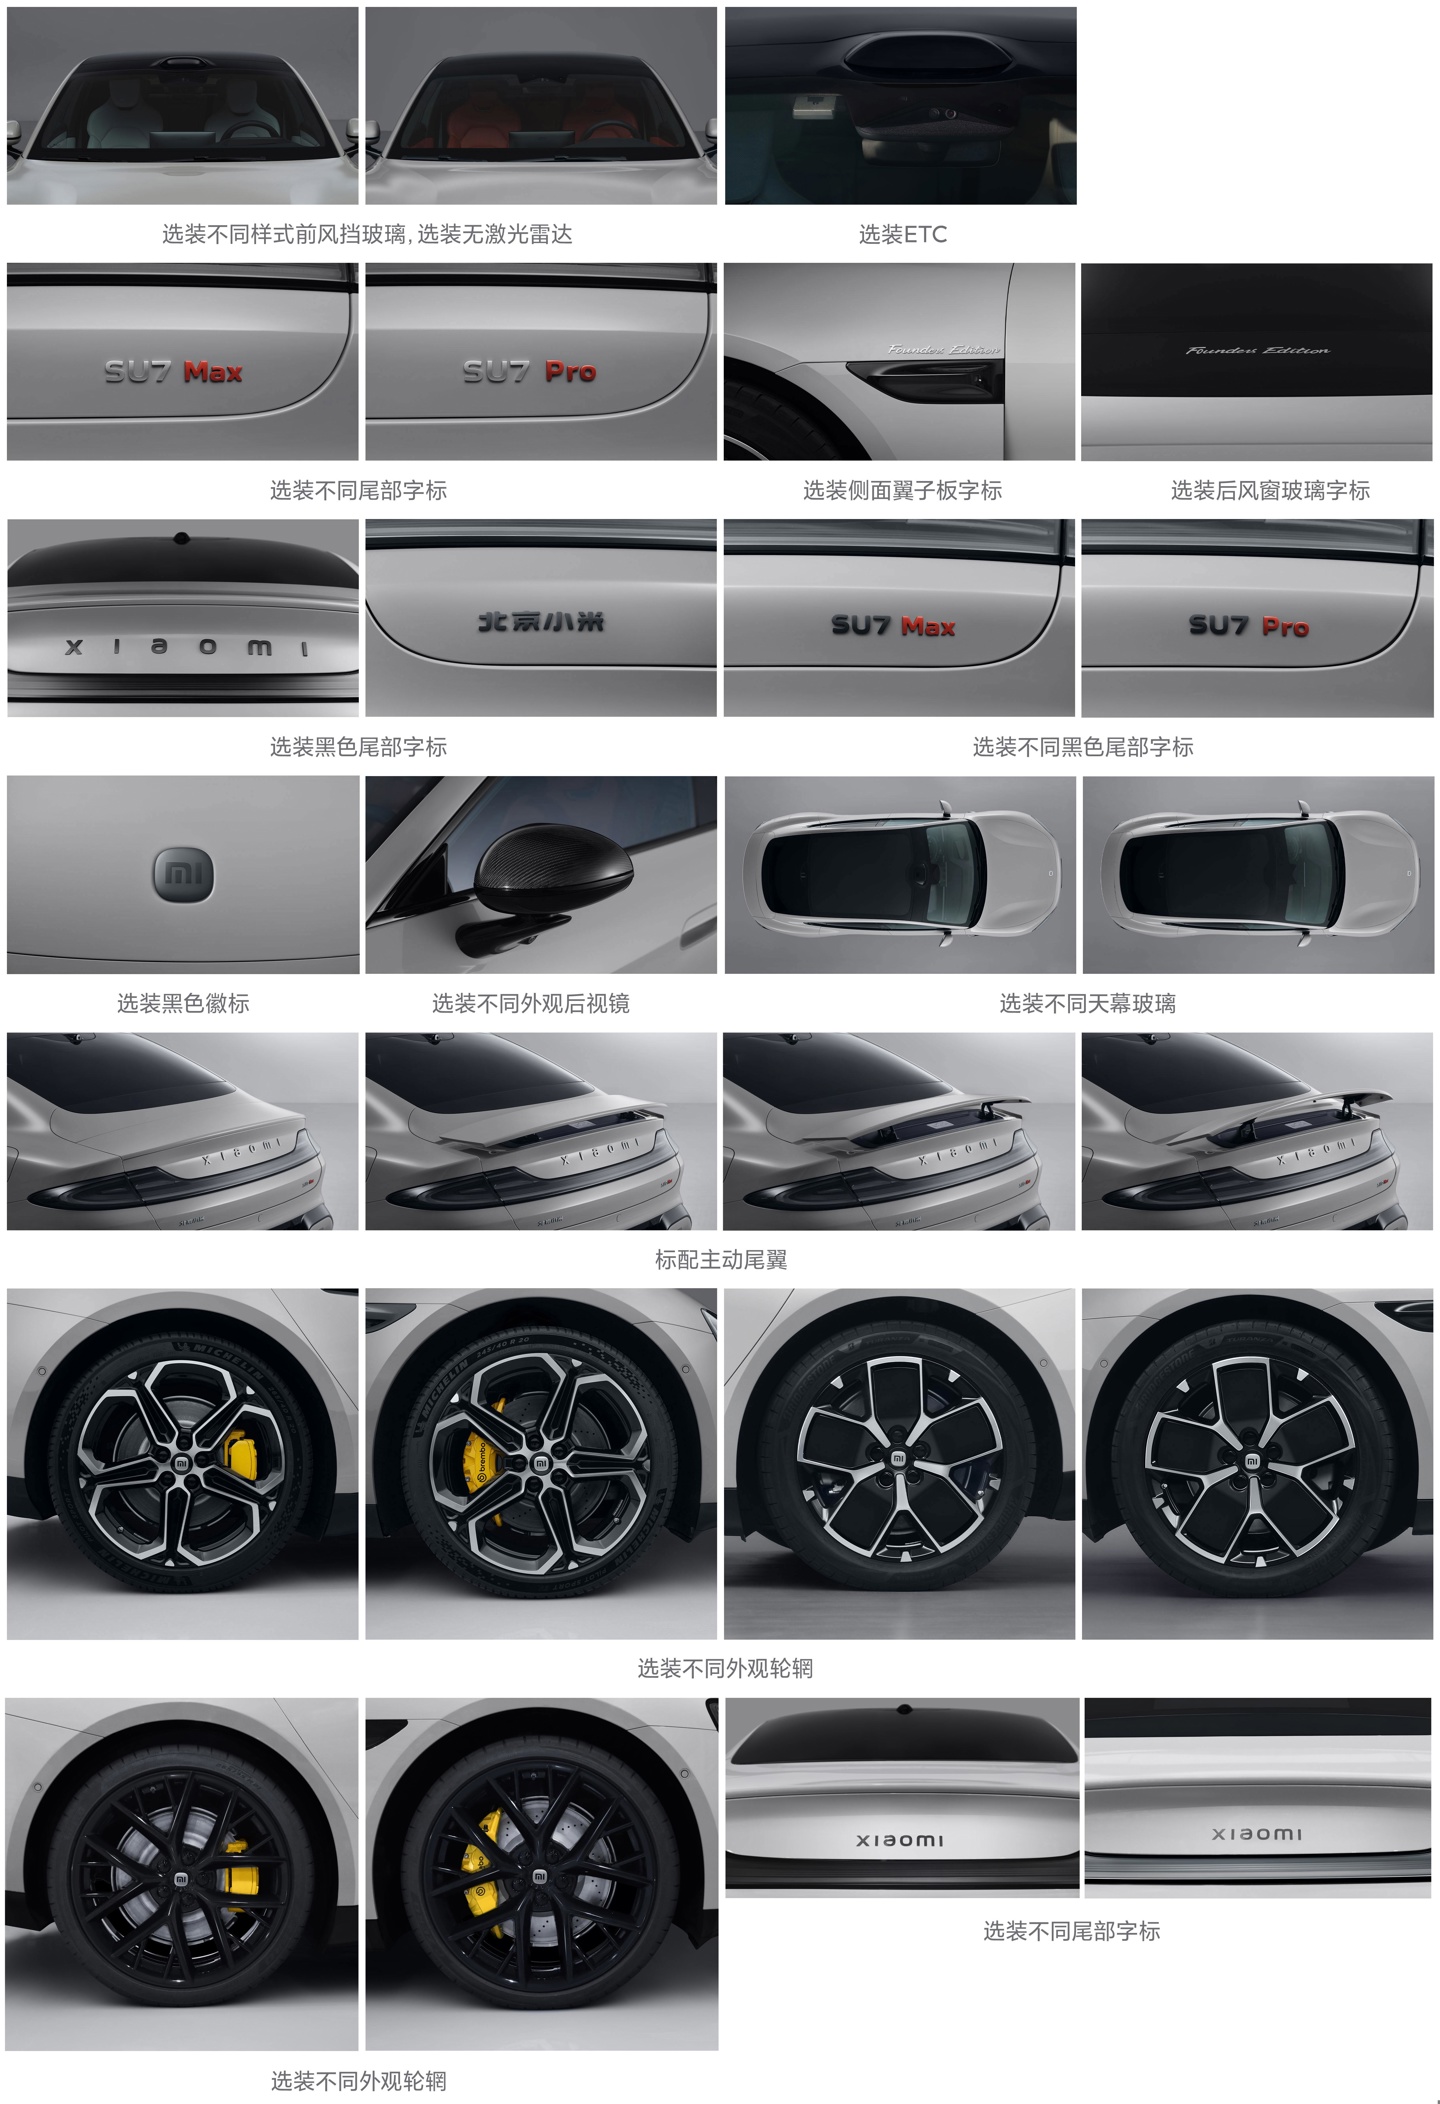 小米汽车SU7工信部信息变更：增加21英寸轮圈，尾部 xiaomi 可选更小字体